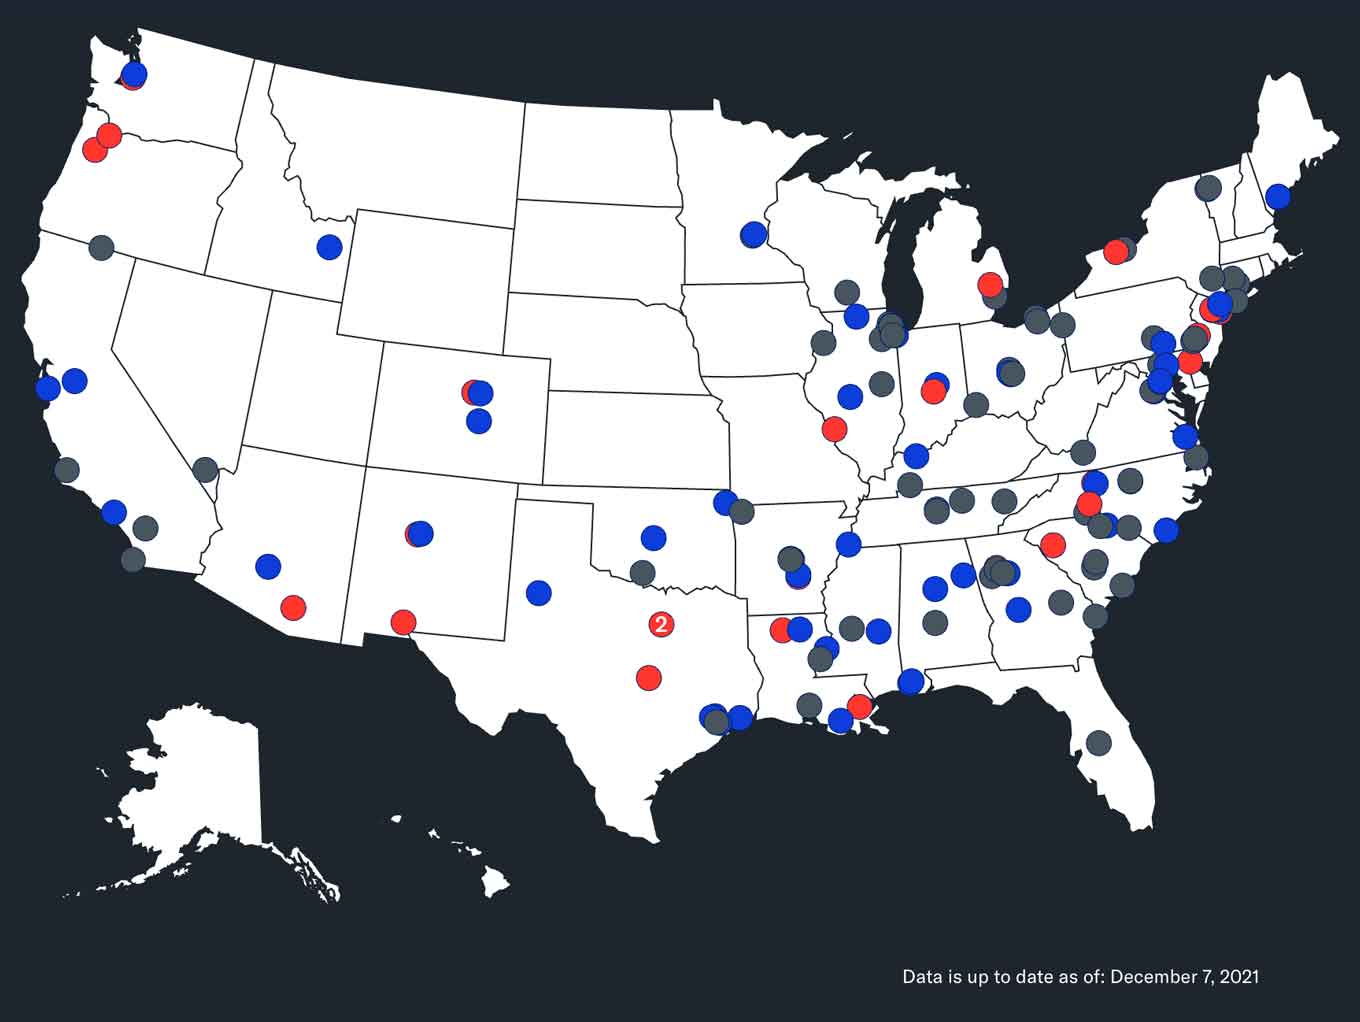 Kaart van de Verenigde Staten: Geweervuur op schoolterreinen in de Verenigde Staten: In 2021 waren er minstens 149 incidenten van geweervuur op schoolterreinen, resulterend in 32 doden (aangegeven door rode cirkels) en 94 gewonden (aangegeven door blauwe cirkels) nationaal. (Grijze cirkels geven geen doden of gewonden aan)